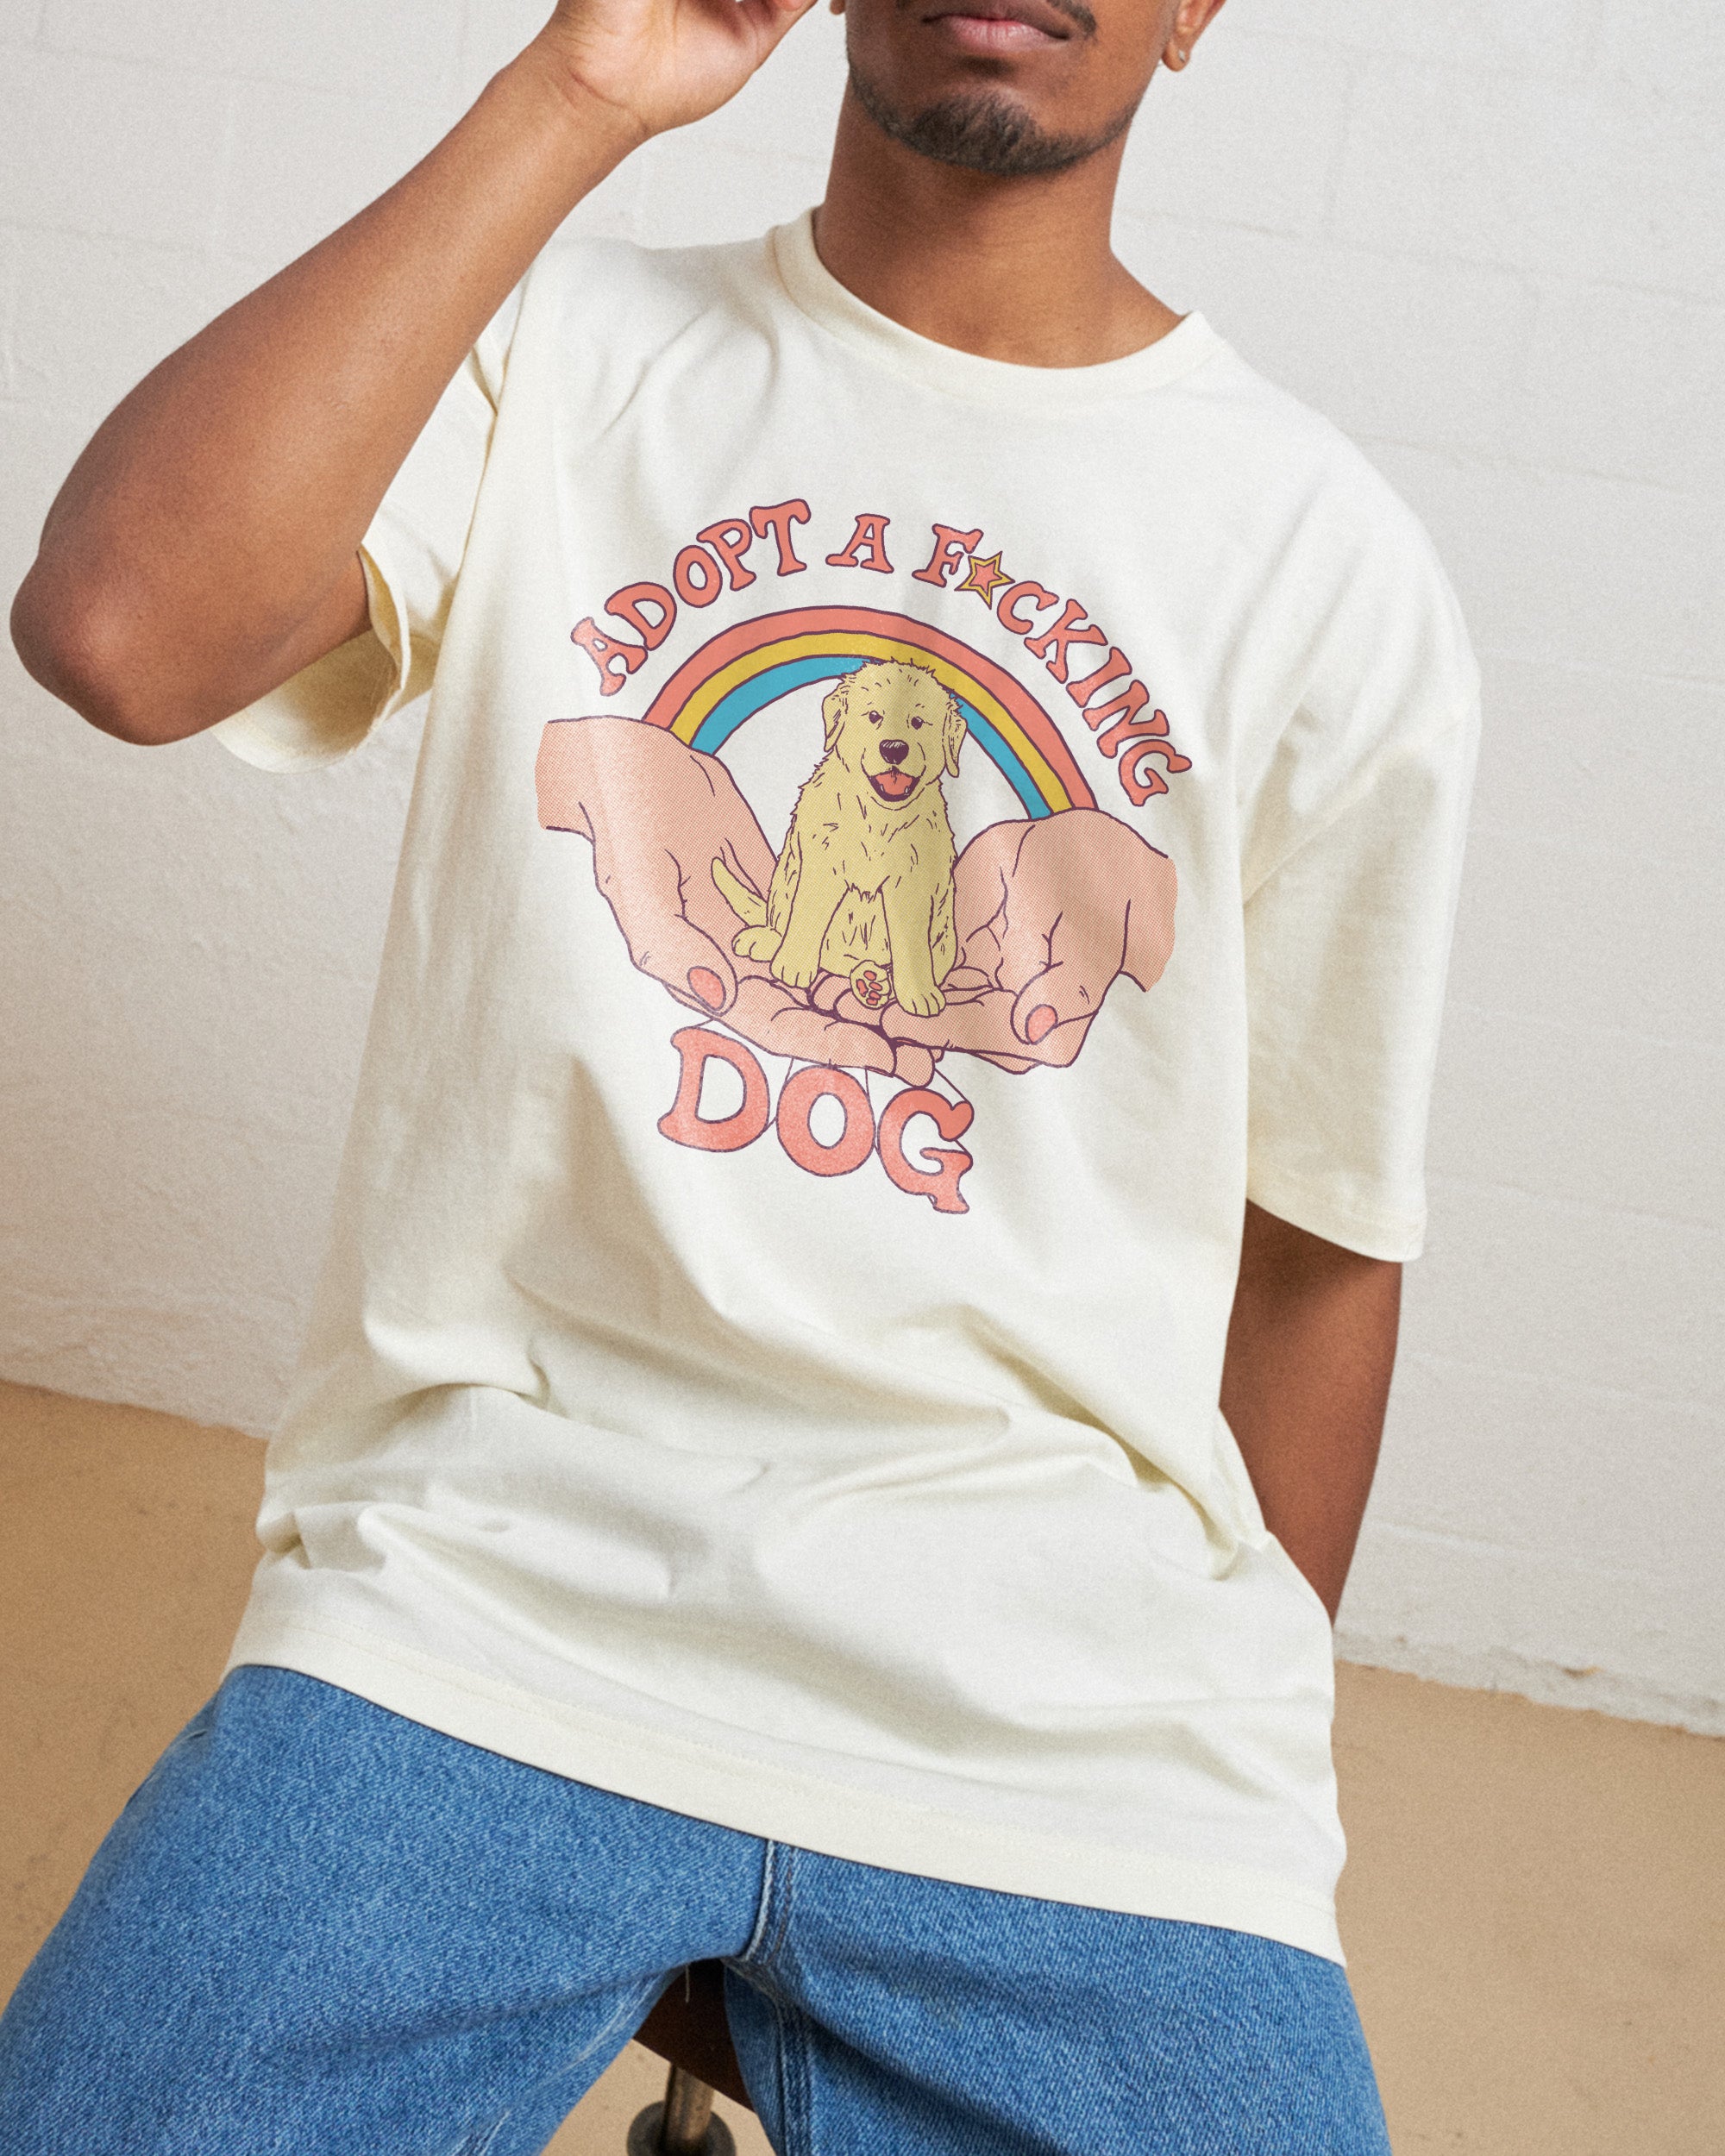 Adopt a F-cking Dog T-Shirt